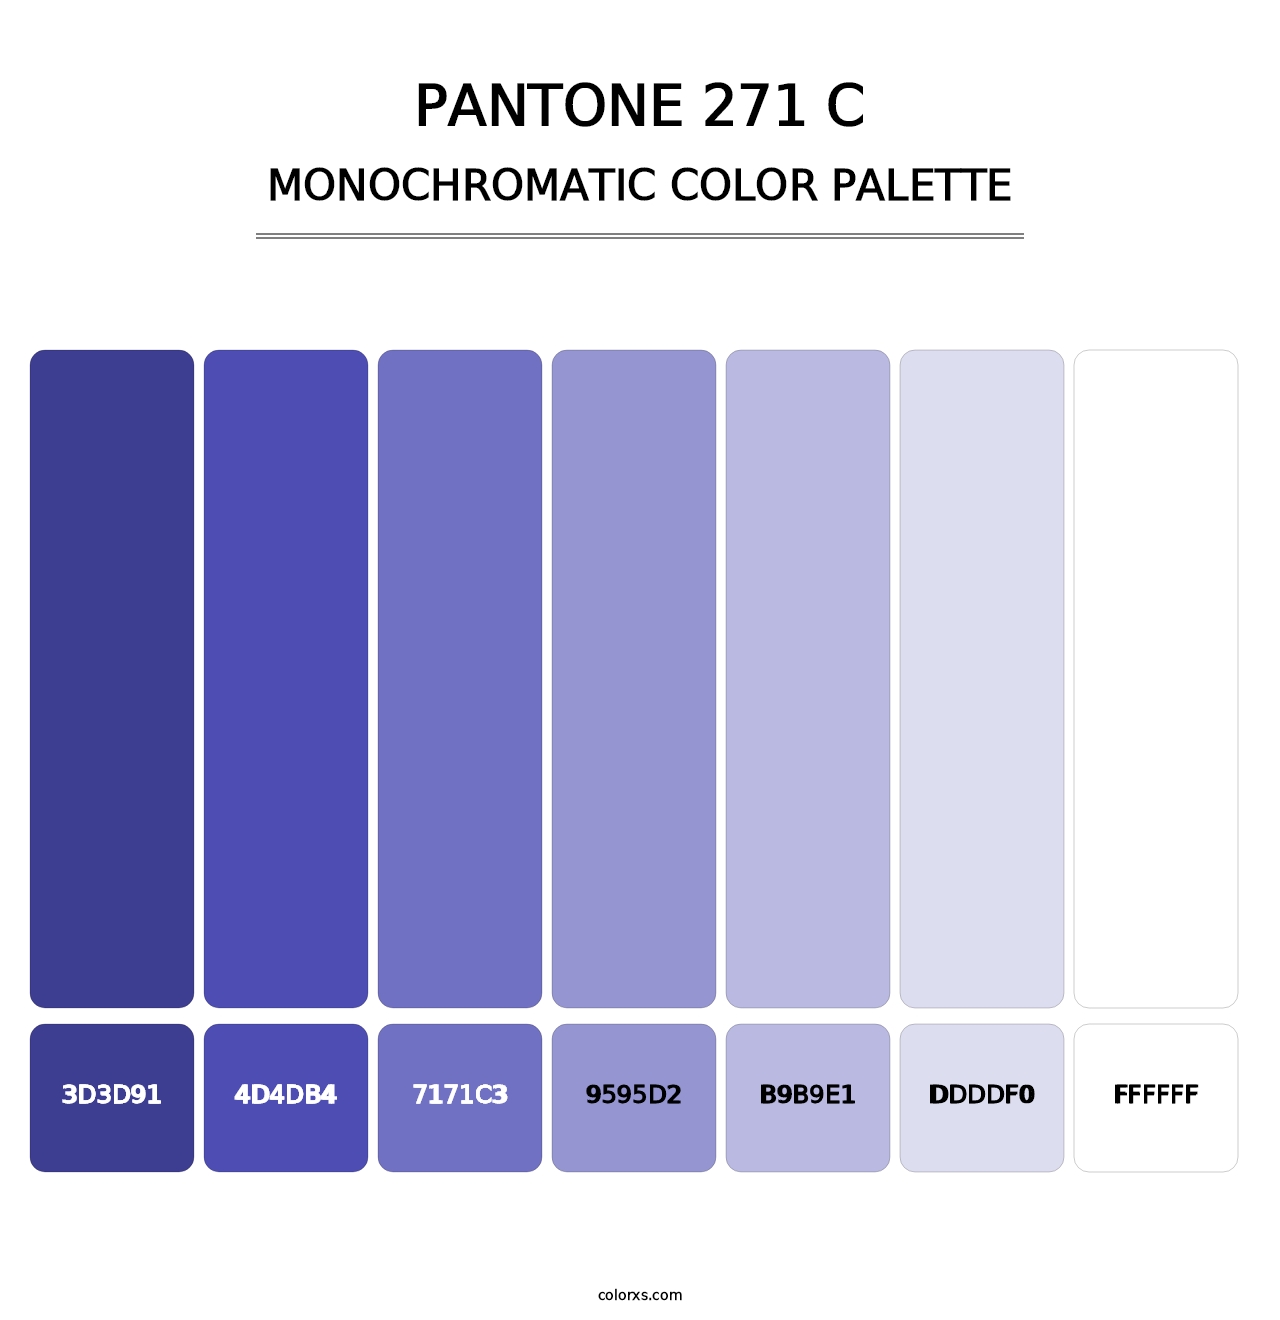 PANTONE 271 C - Monochromatic Color Palette